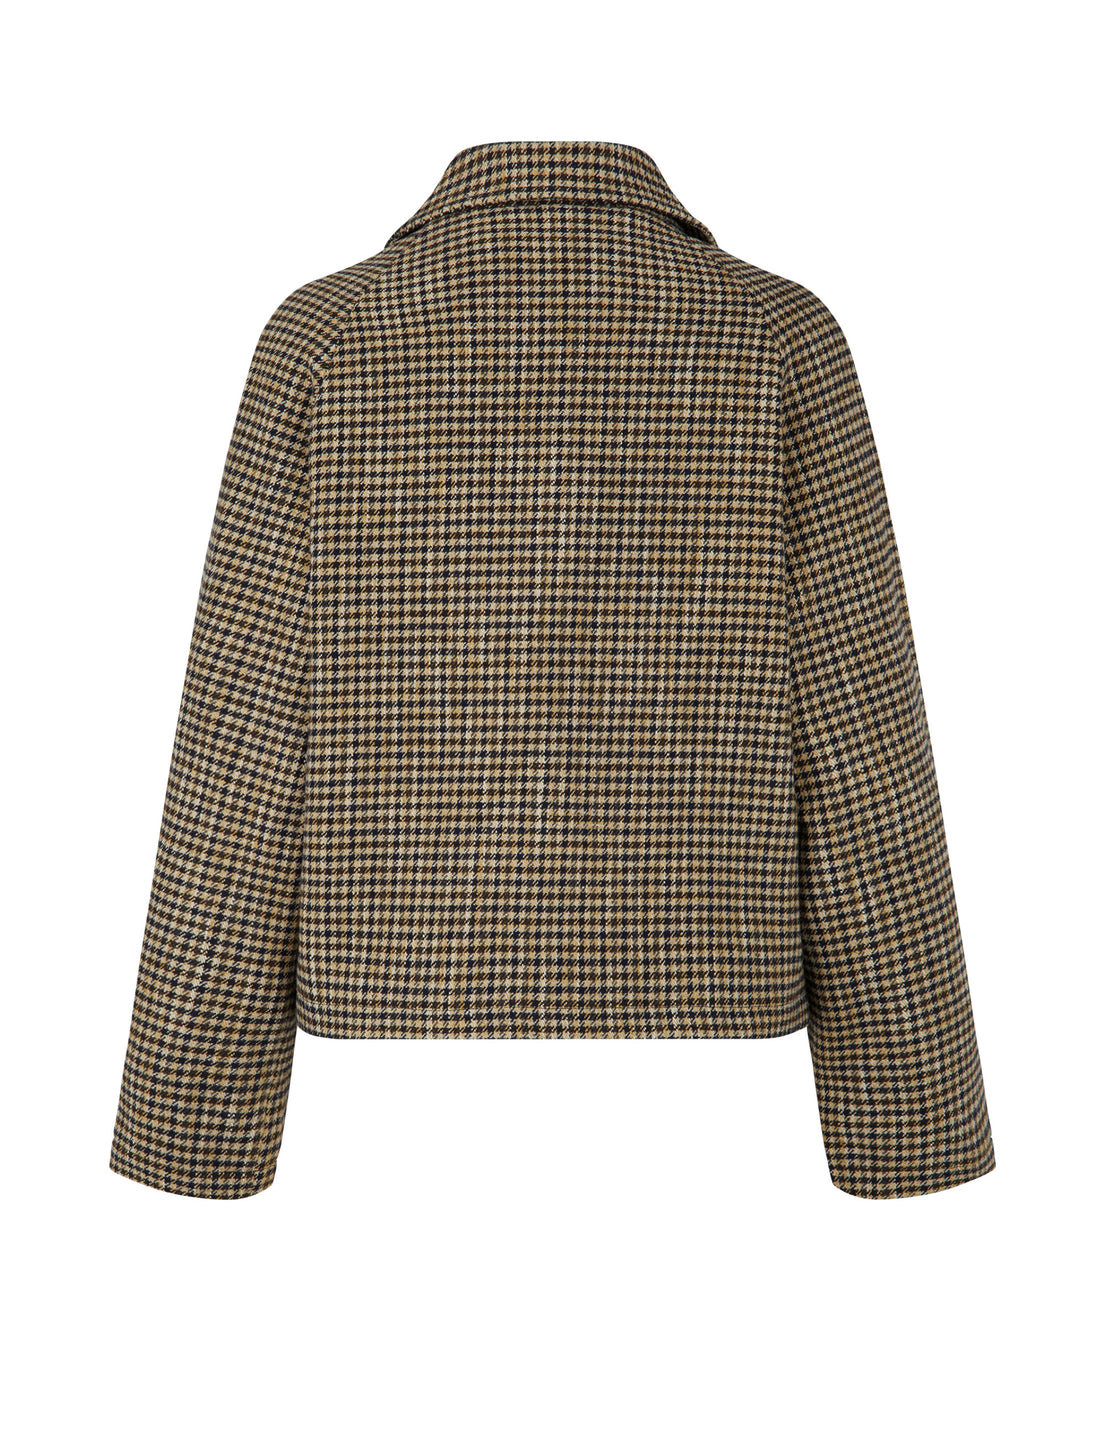 Kristine jacket brown/navy/beige check